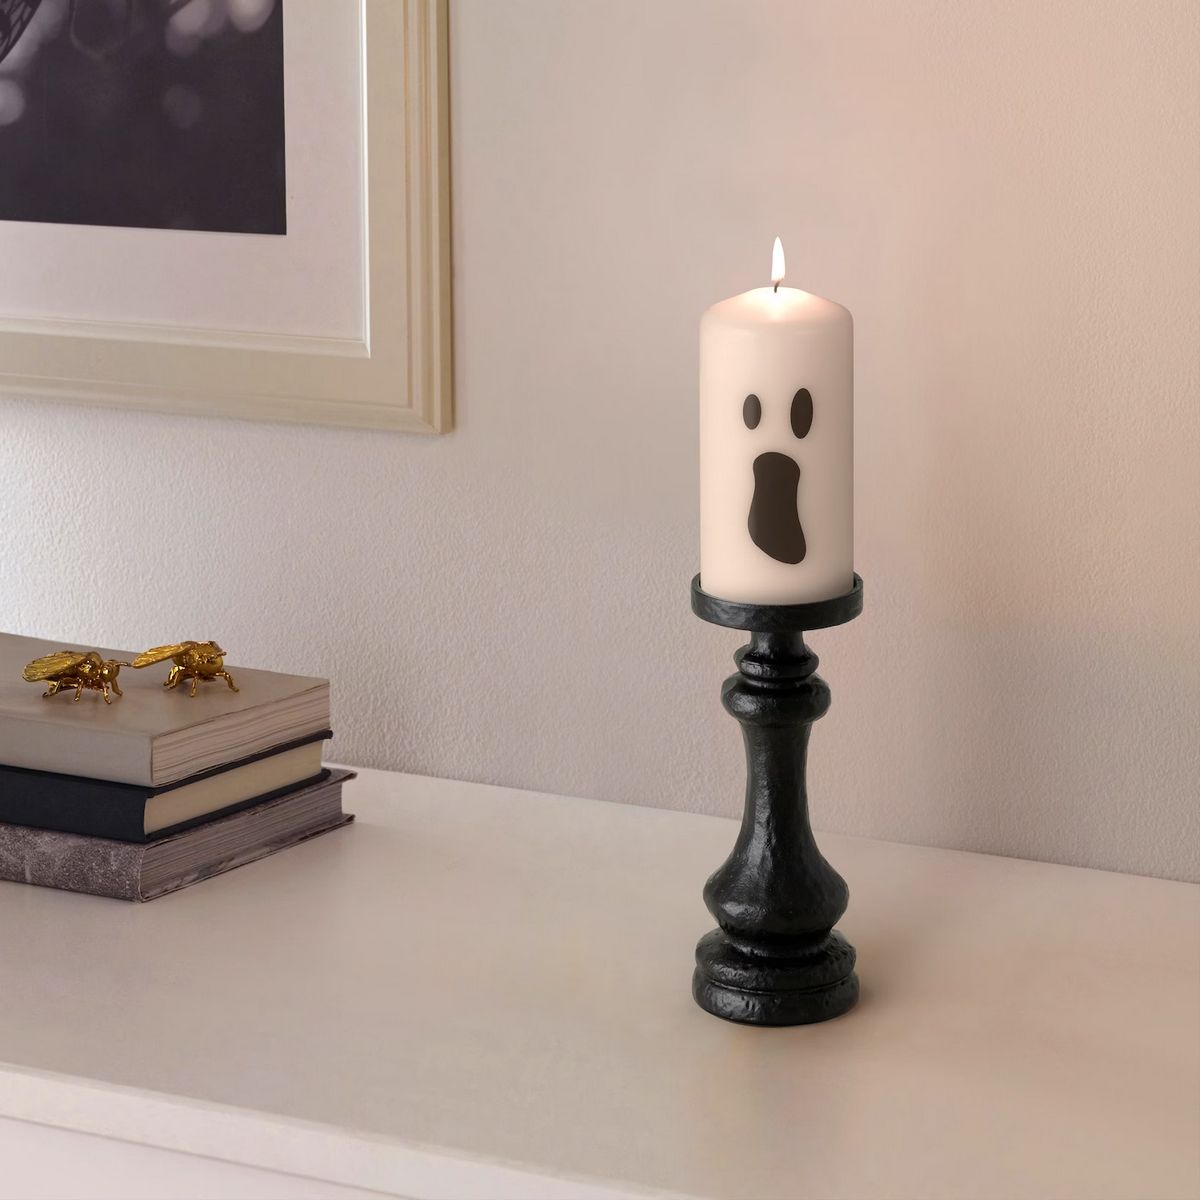 La collection KUSTFYR offre un large éventail de décorations macabres et amusantes pour Halloween, disponibles en ligne et en magasin chez IKEA.